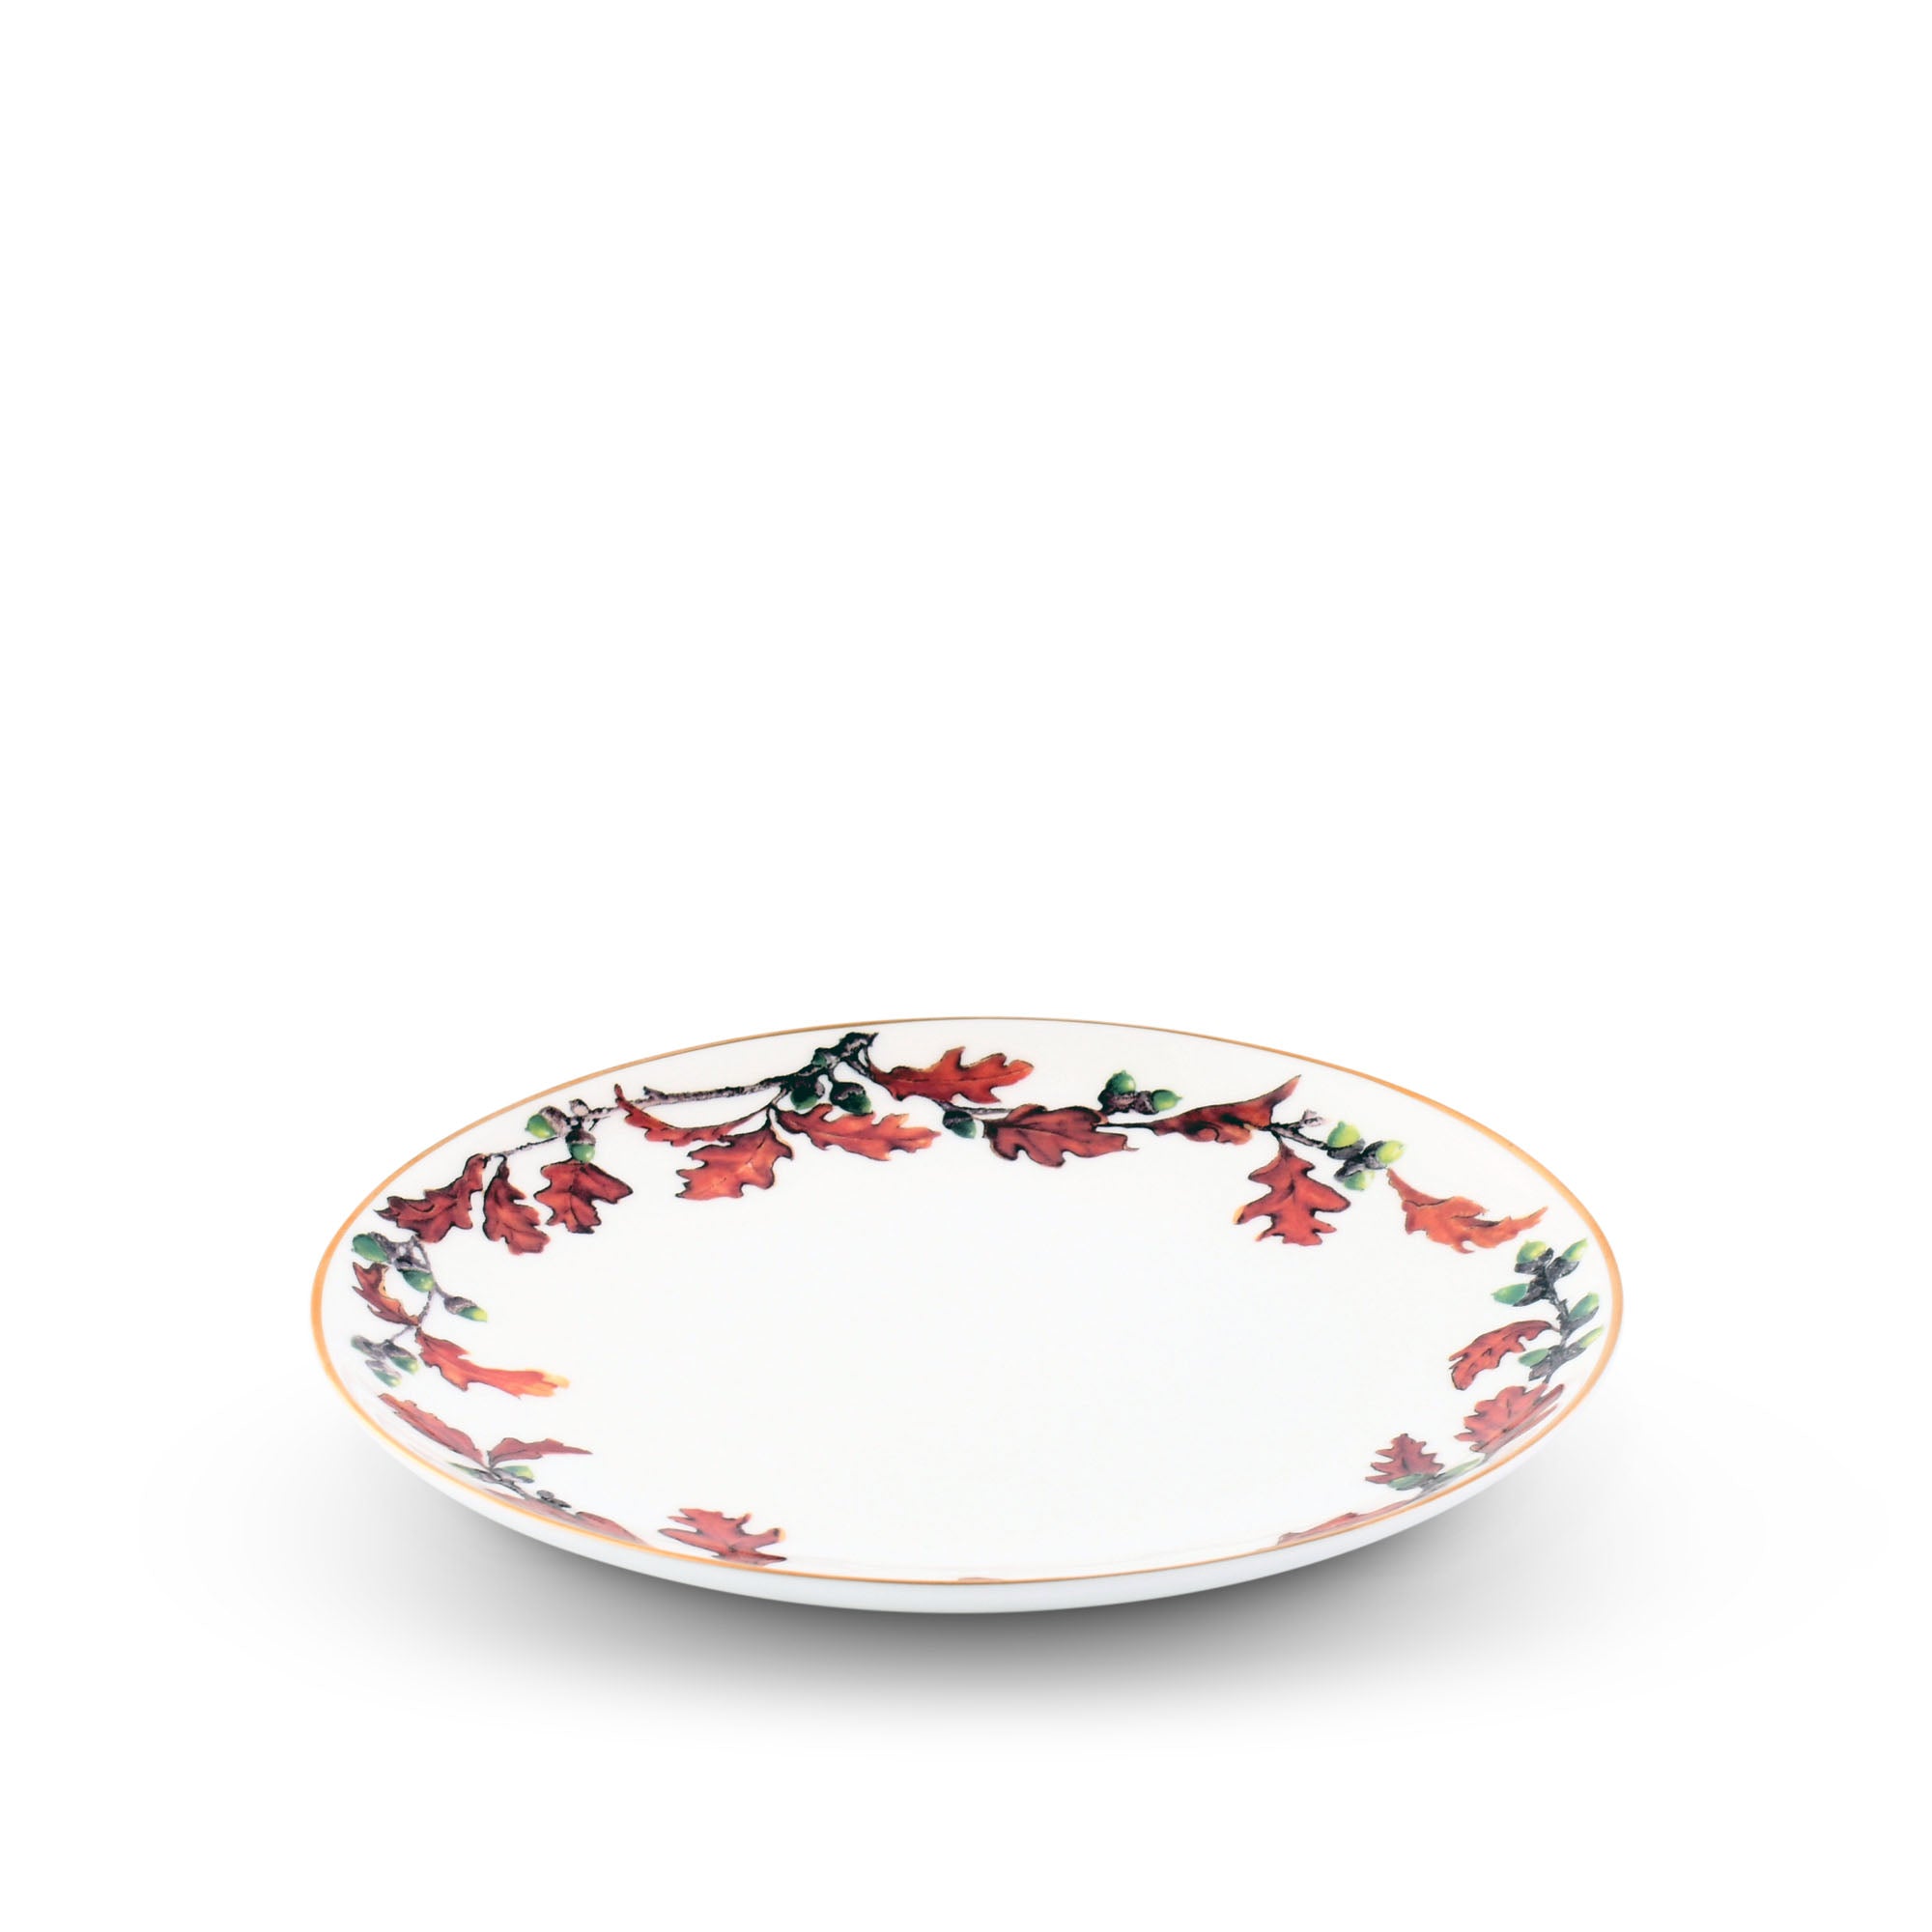 Vagabond House Norwood Acorn Bone China Round Salad Plate Product Image